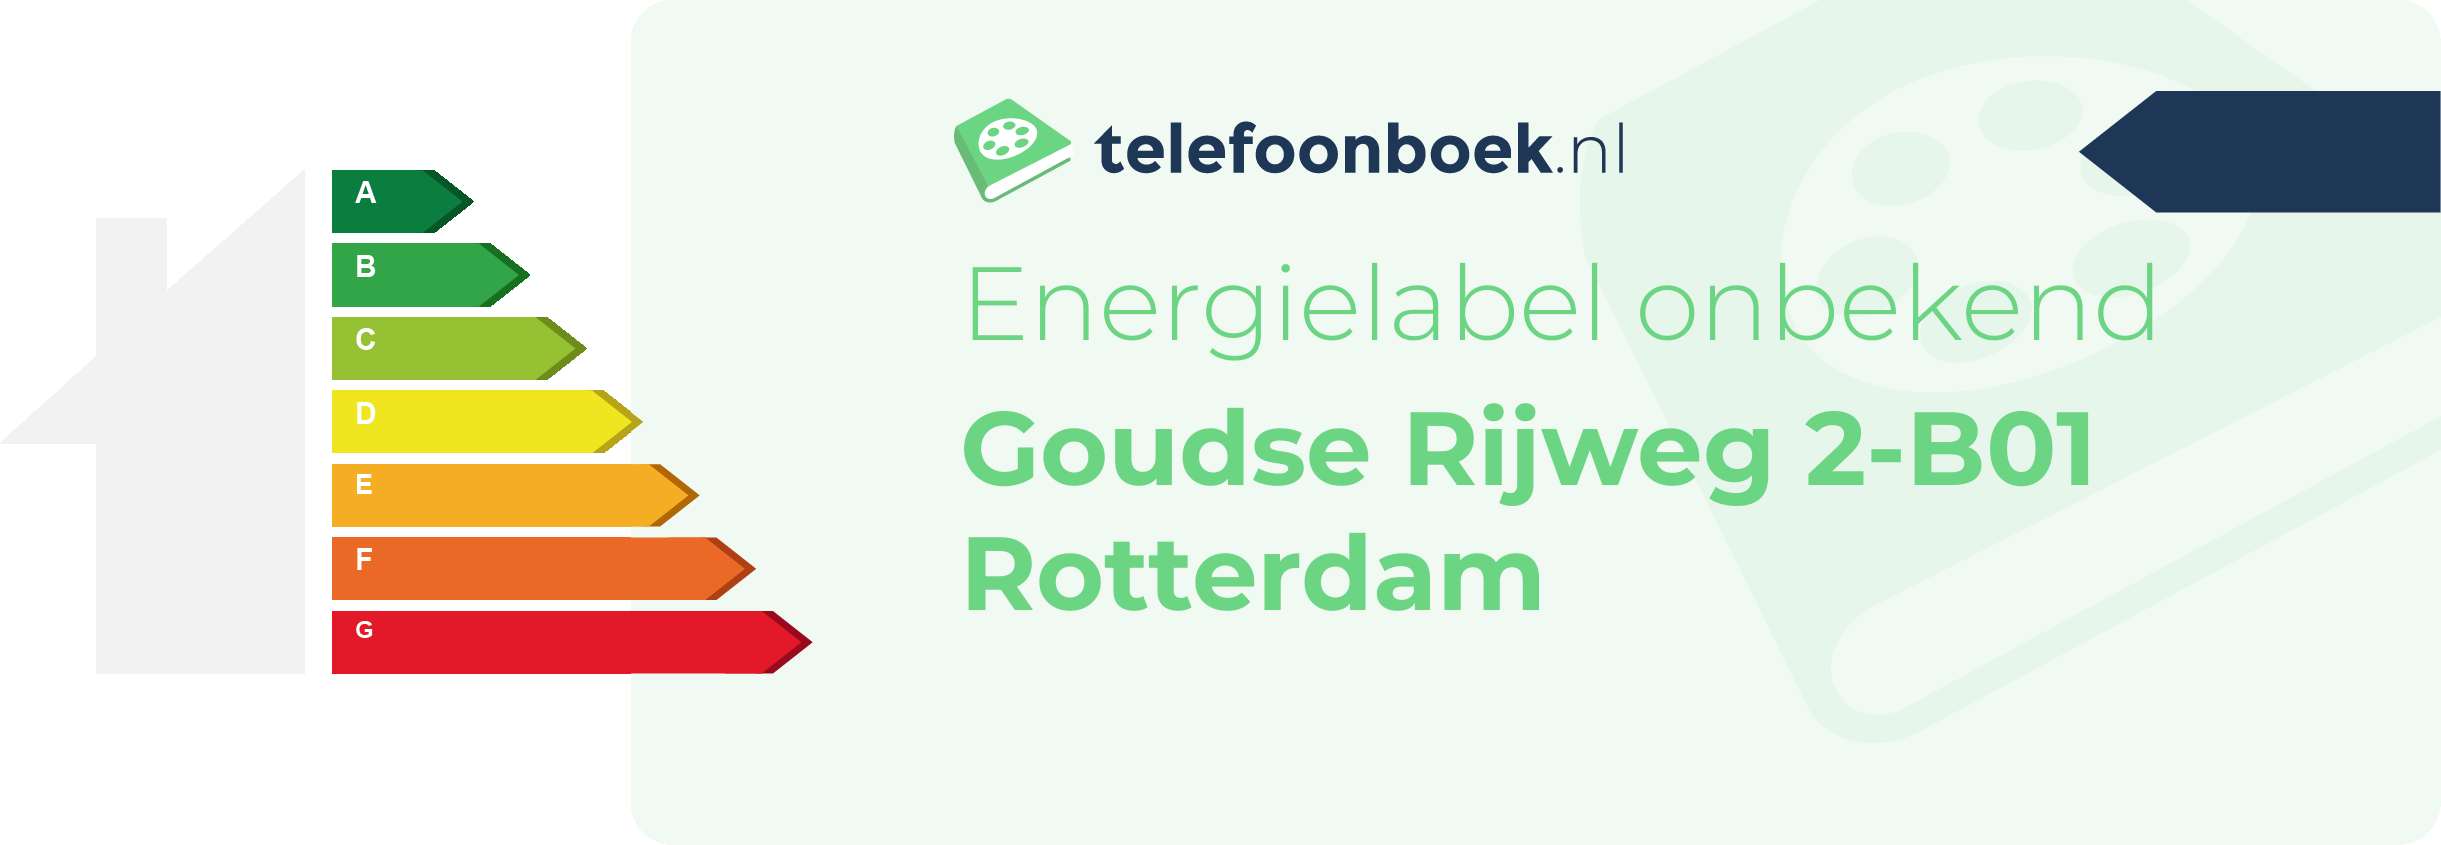 Energielabel Goudse Rijweg 2-B01 Rotterdam